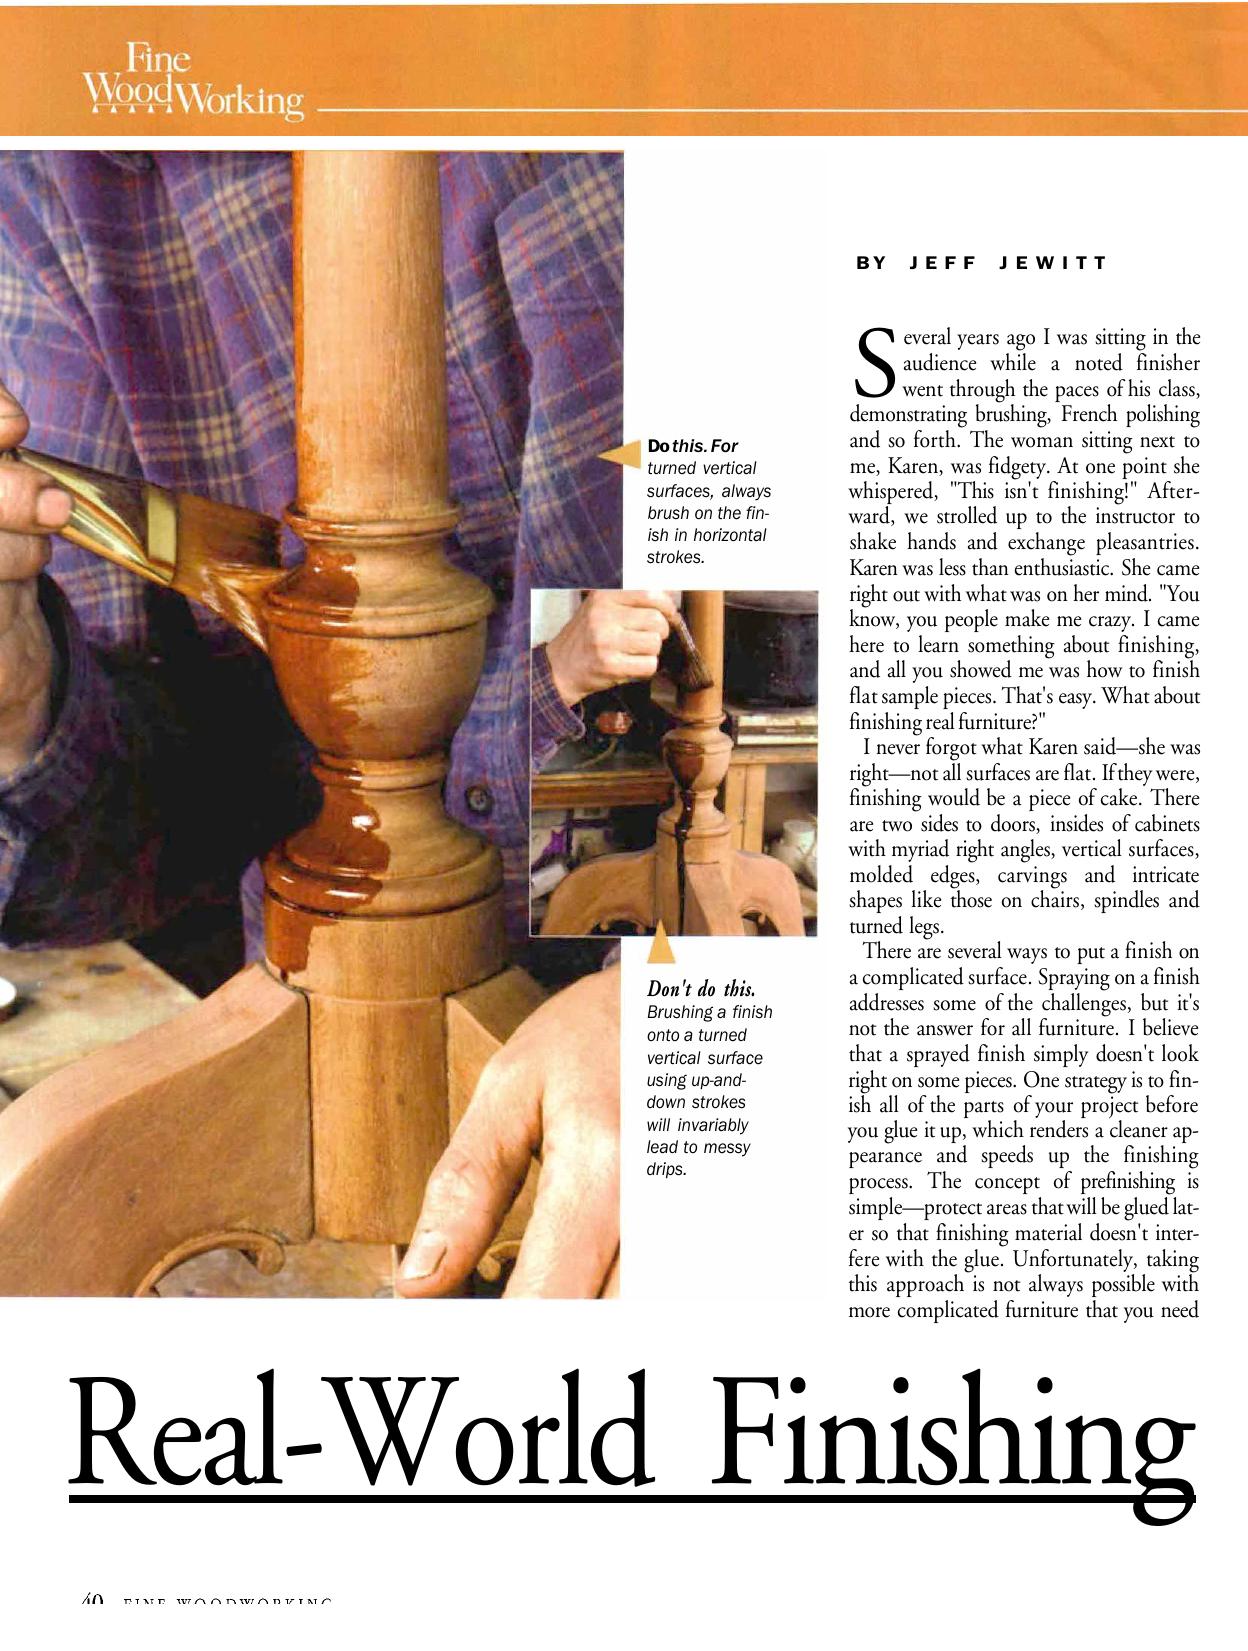 Real-World Finishing by Jeff Jewitt